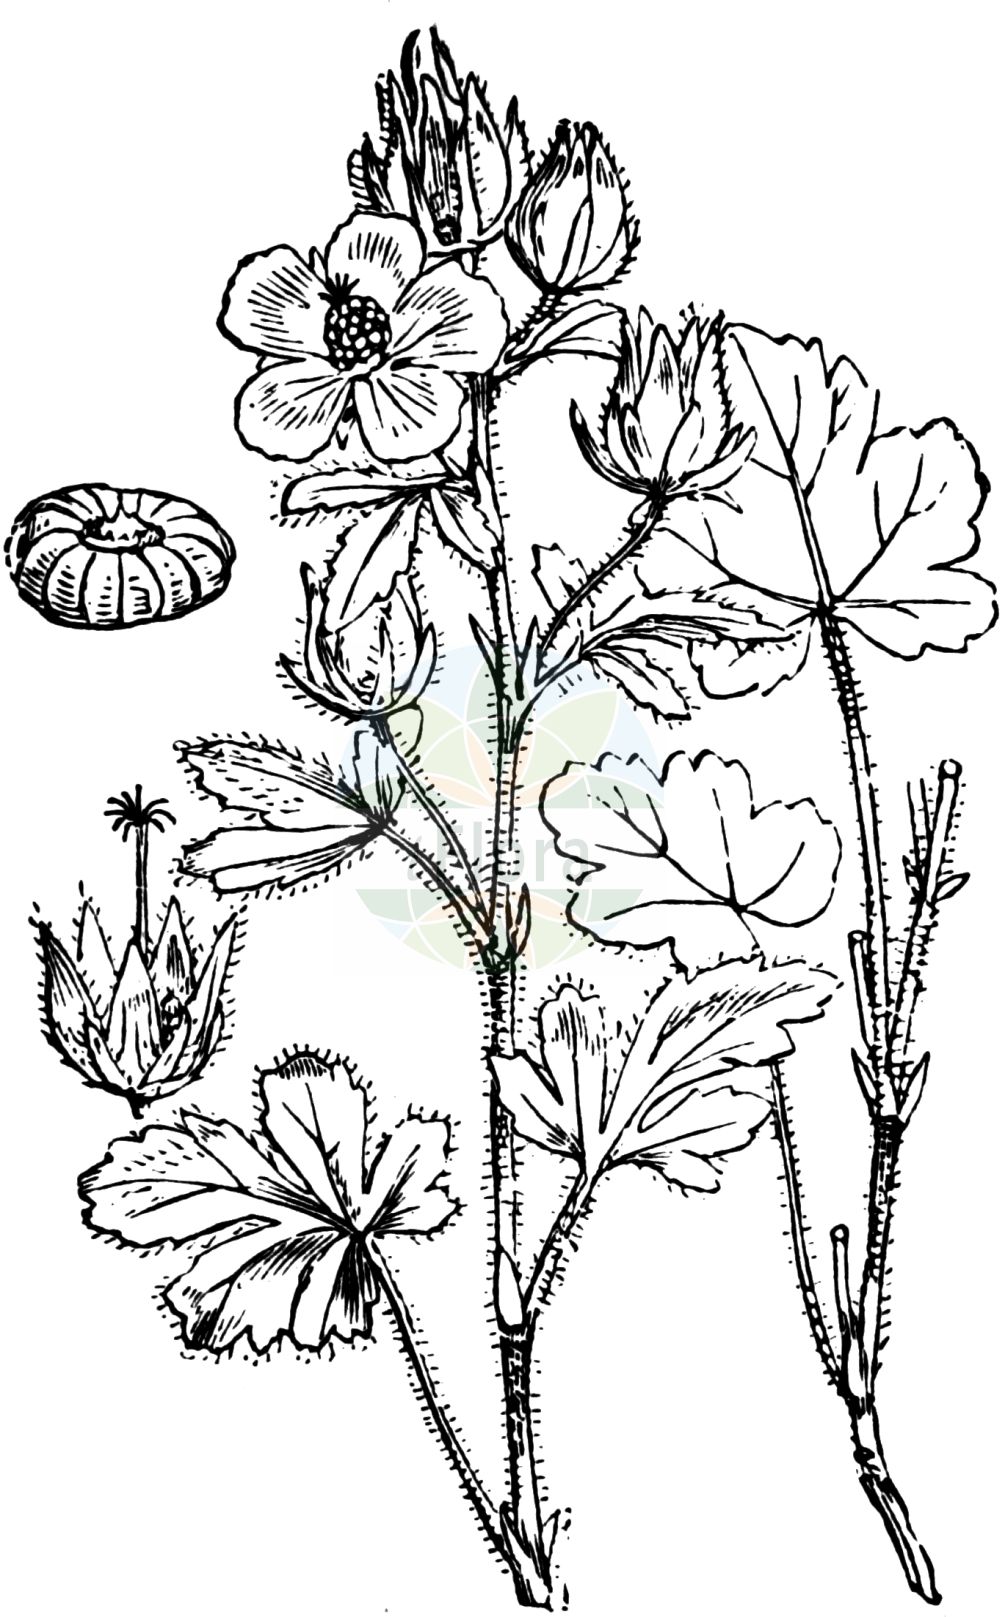 Historische Abbildung von Althaea hirsuta (Rauher Eibisch - Rough Marsh-mallow). Das Bild zeigt Blatt, Bluete, Frucht und Same. ---- Historical Drawing of Althaea hirsuta (Rauher Eibisch - Rough Marsh-mallow). The image is showing leaf, flower, fruit and seed.(Althaea hirsuta,Rauher Eibisch,Rough Marsh-mallow,Althaea hirsuta,Rauher Eibisch,Rauhaariger Eibisch,Rough Marsh-mallow,Hairy Mallow,Hairy Marshmallow,Hispid Mallow,Althaea,Eibisch,Marshmallow,Malvaceae,Malvengewächse,Mallow family,Blatt,Bluete,Frucht,Same,leaf,flower,fruit,seed,Fitch et al. (1880))